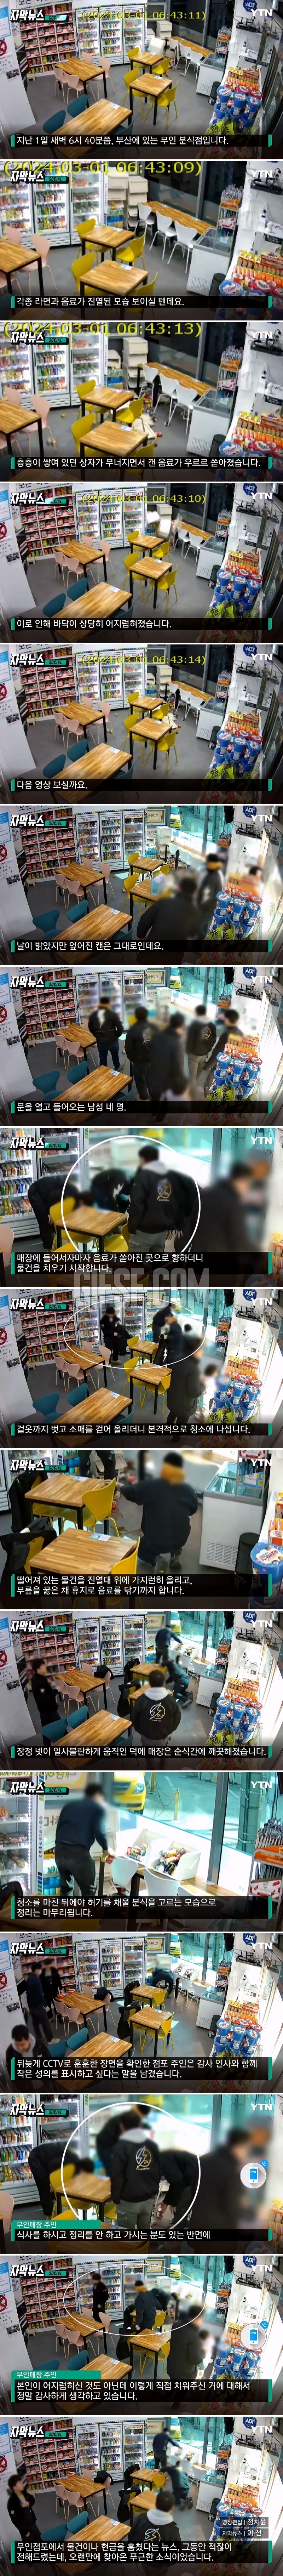 무인점포서 음식 안 고르고.점주 놀라게 한 CCTV.jpg